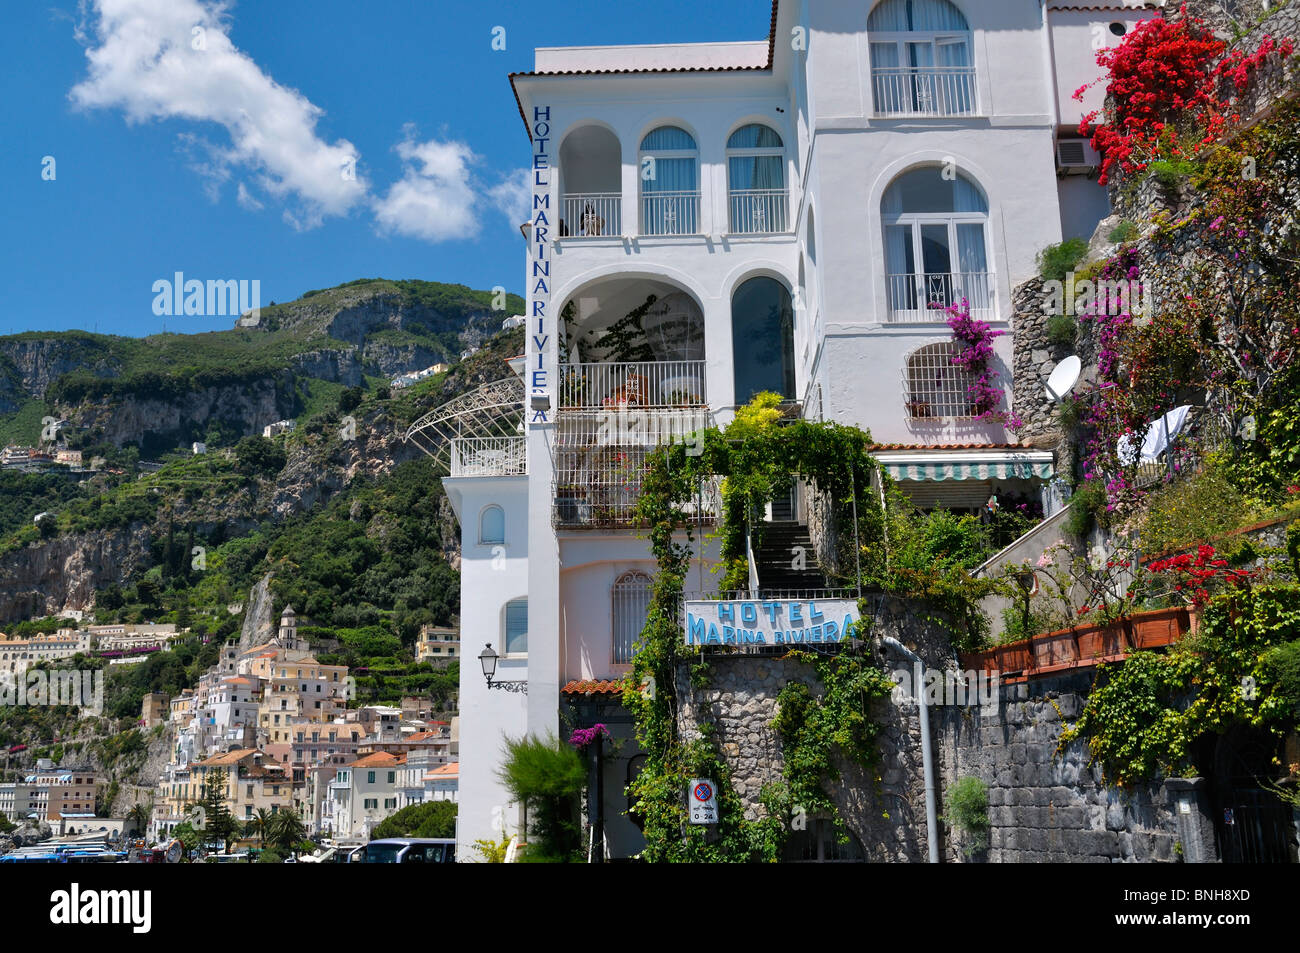 Hotel Marina Riviera in Amalfi, Salerno, Italy Stock Photo